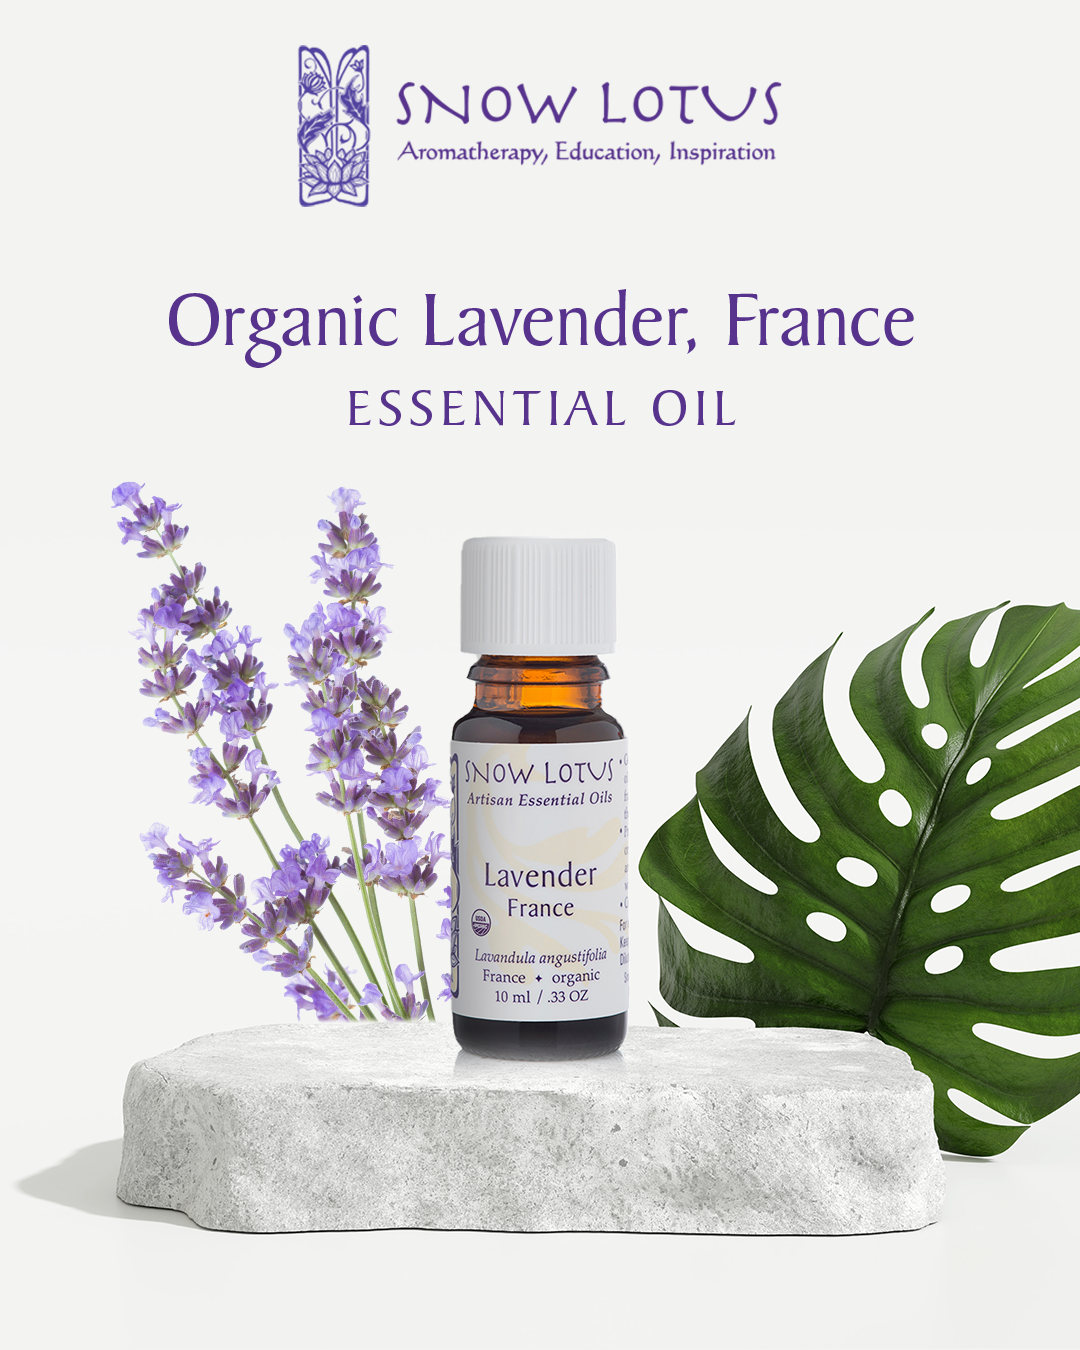 Ad_Lavender France_1